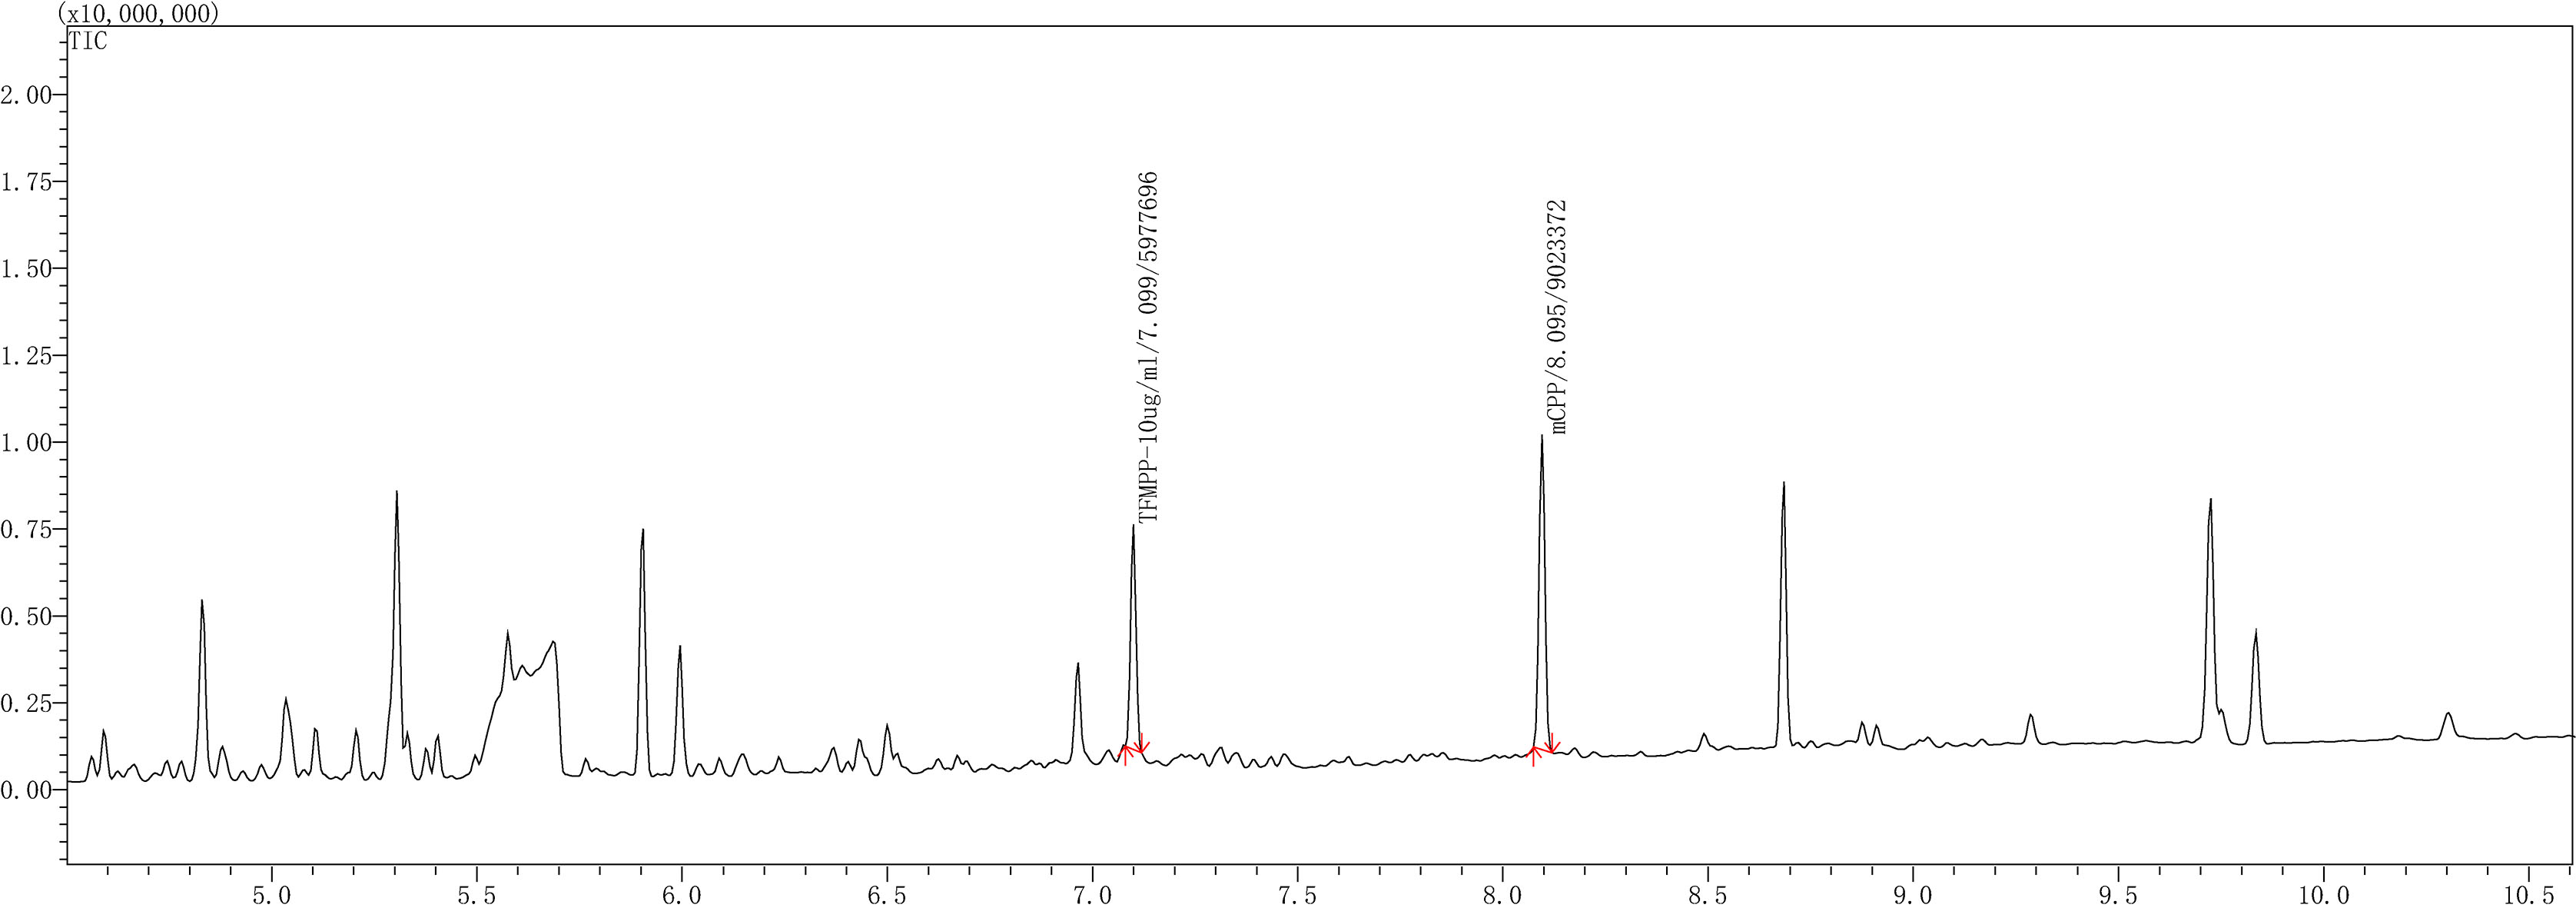 Liquid-liquid gas chromatogram of the urine-TFMPP/mCPP solution.